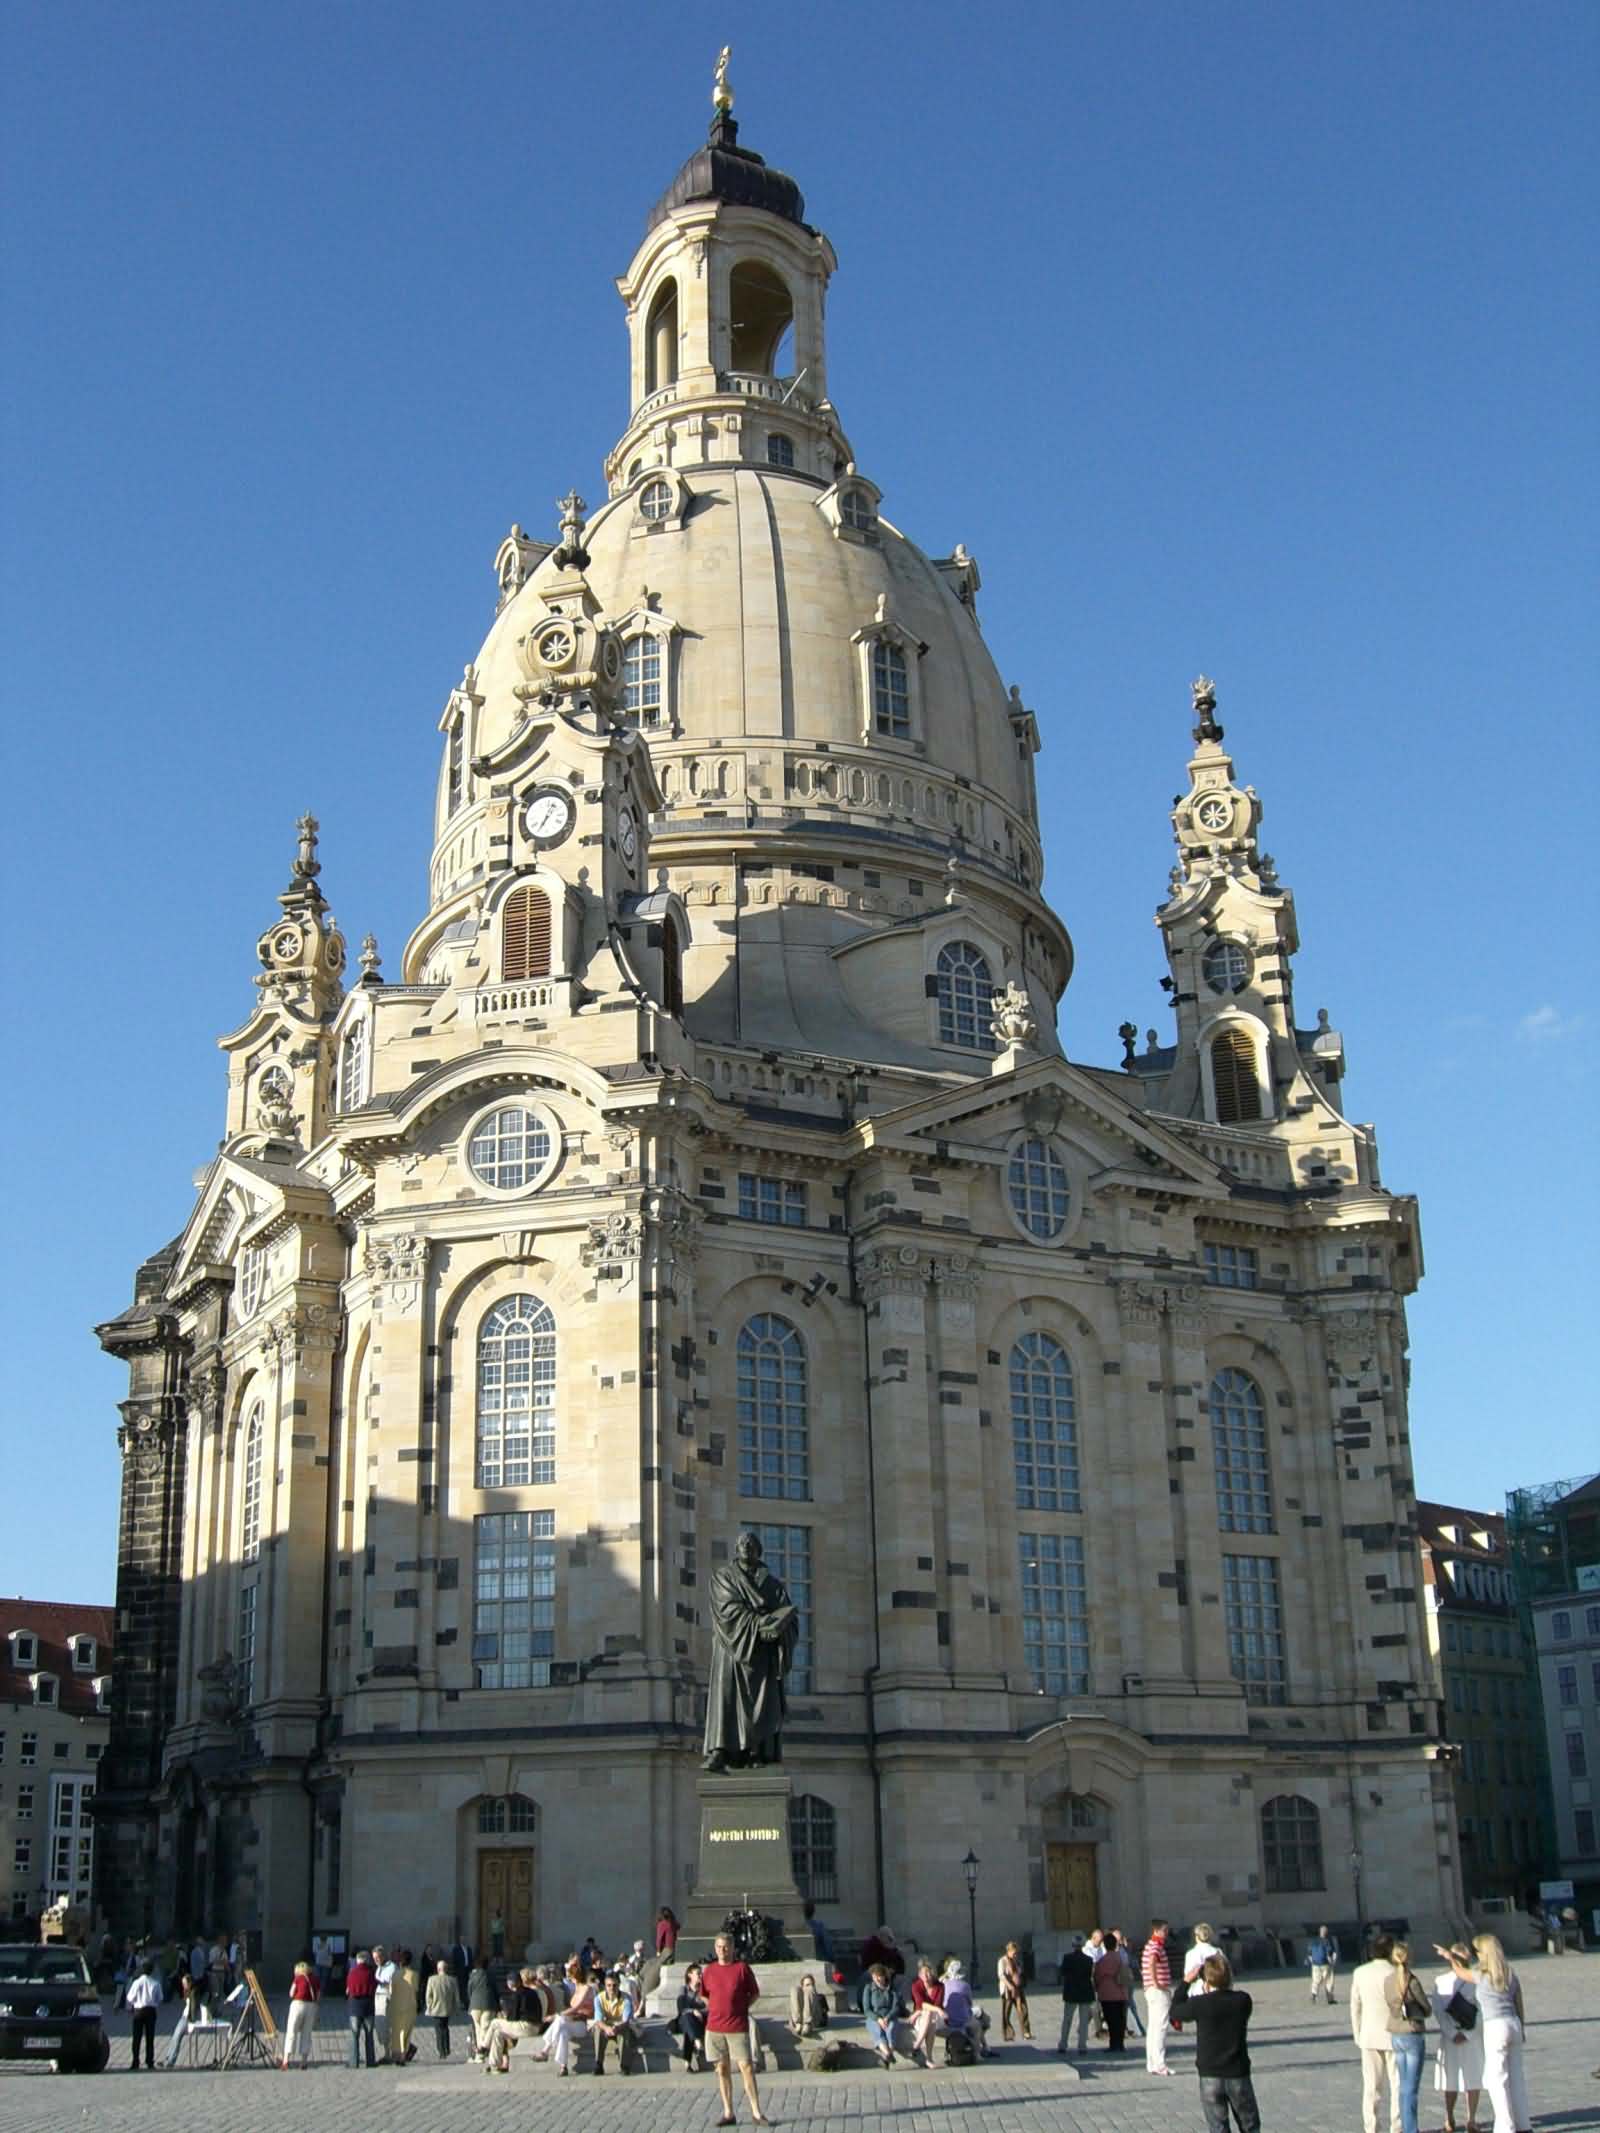 Dresden’s Frauenkirche church